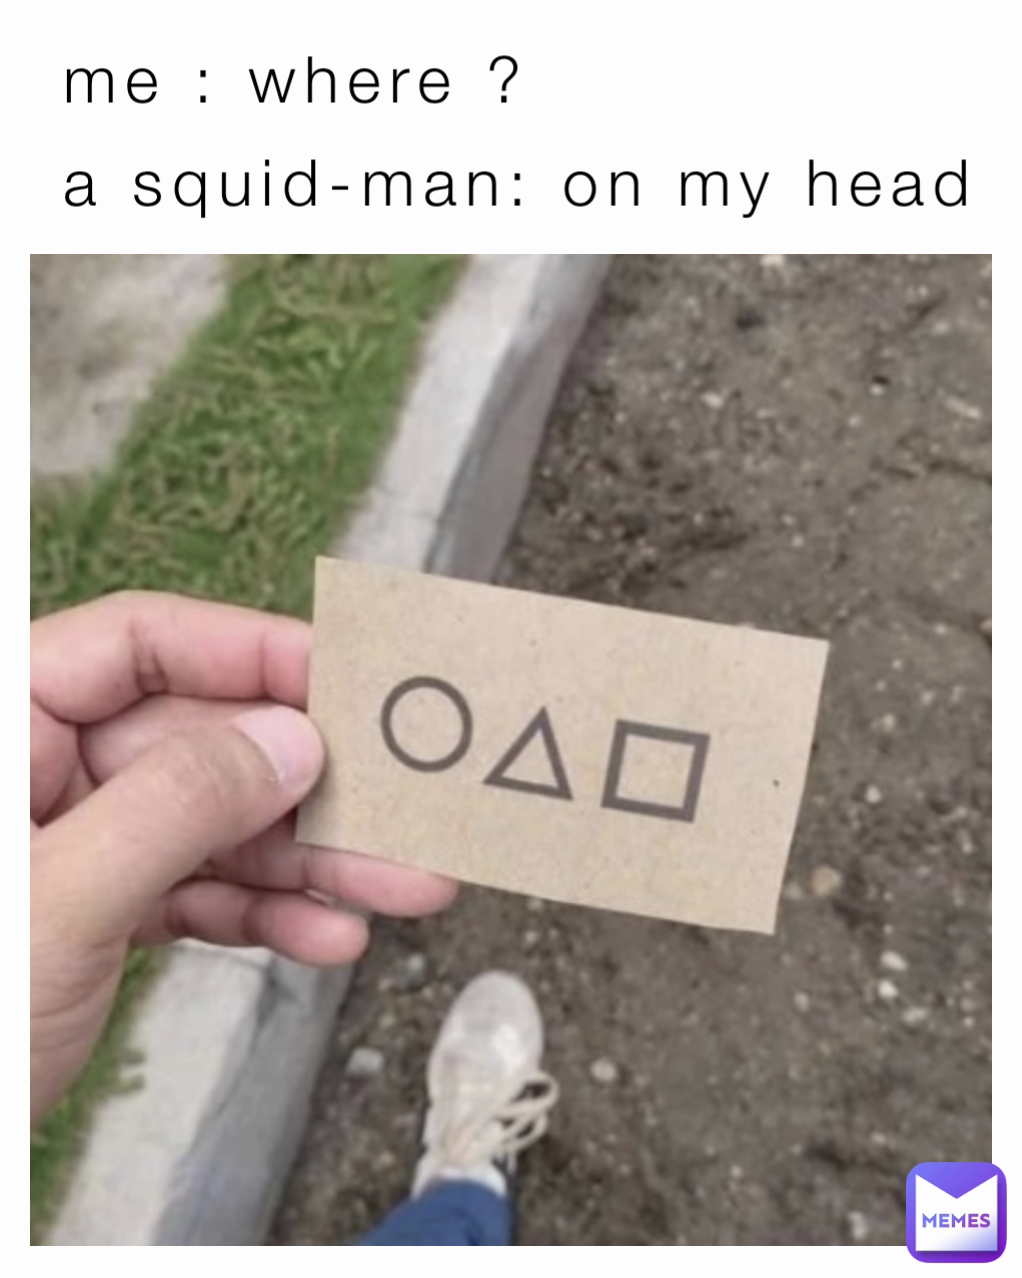 me : where ? 
a squid-man: on my head